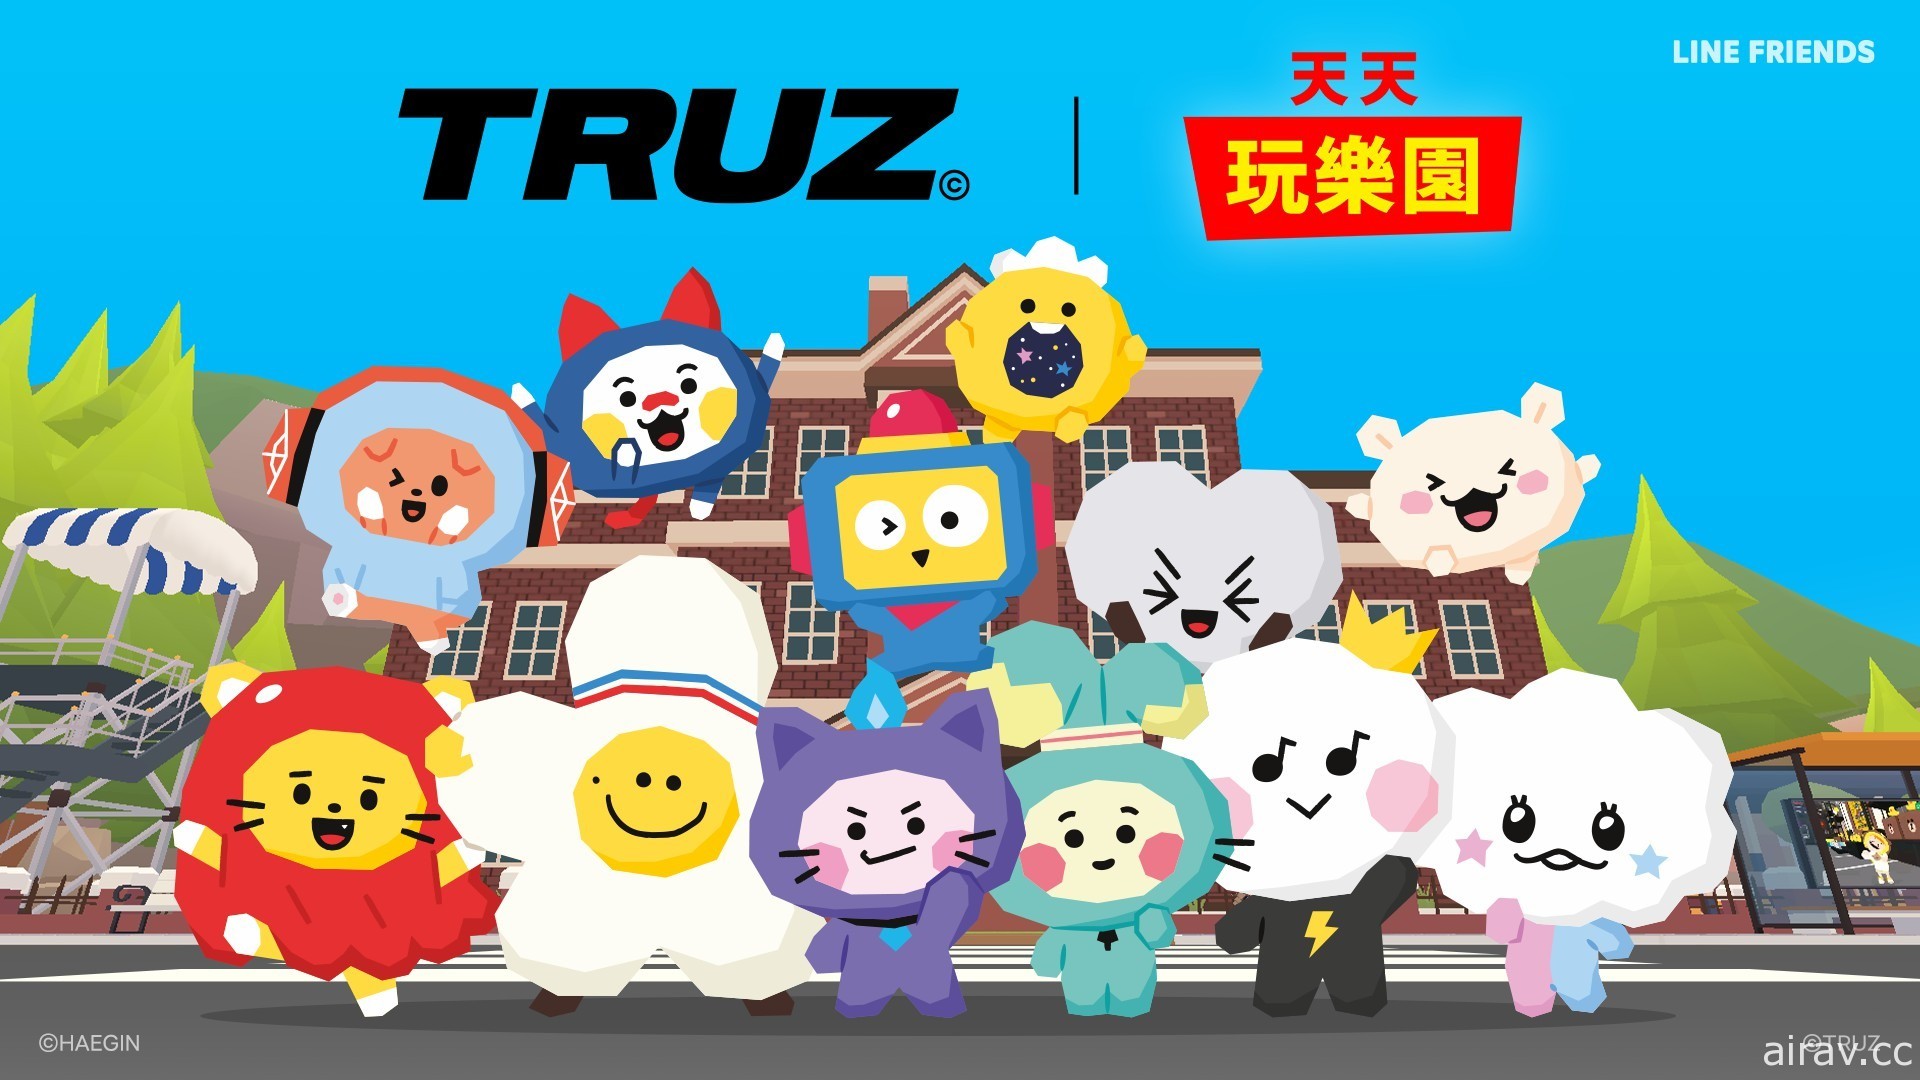 《天天玩乐园》LINE FRIENDS 虚拟商城推出国际卡通“TRUZ”